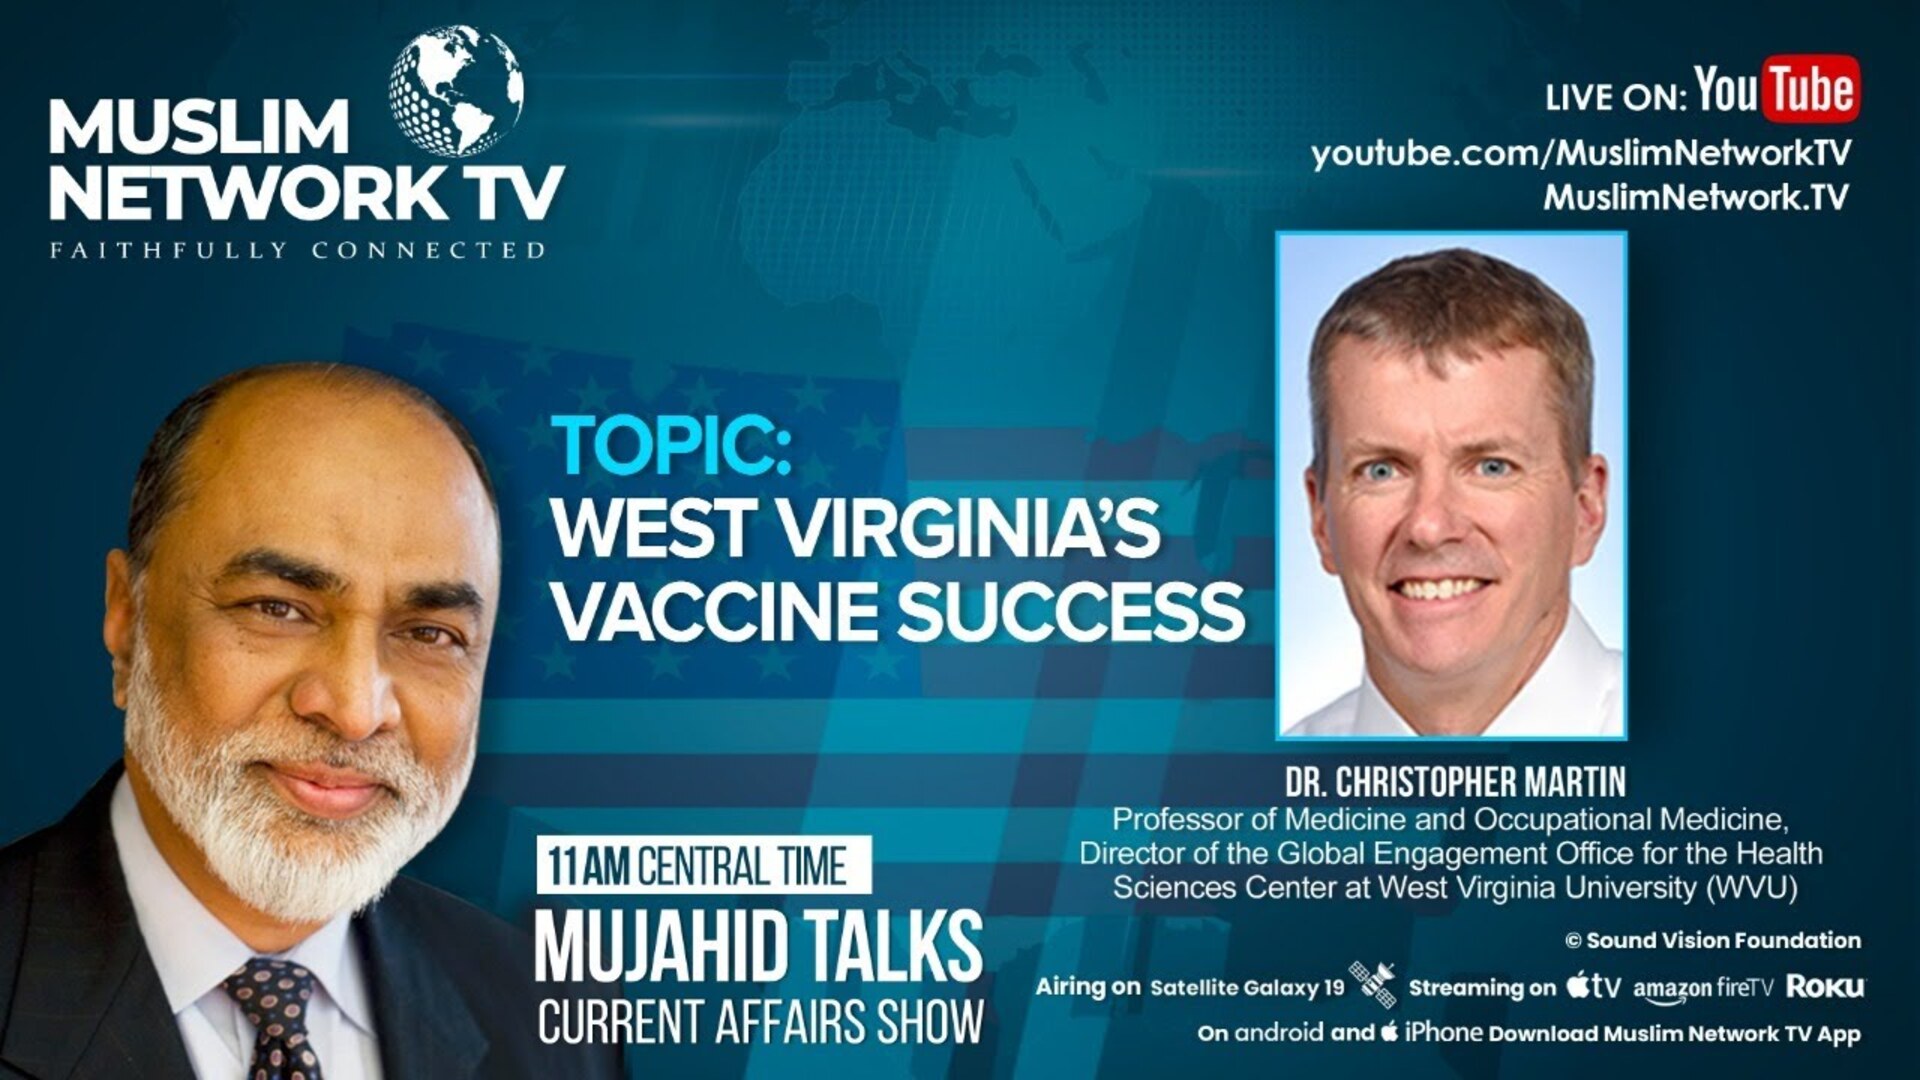 West Virginia’s Vaccine Success